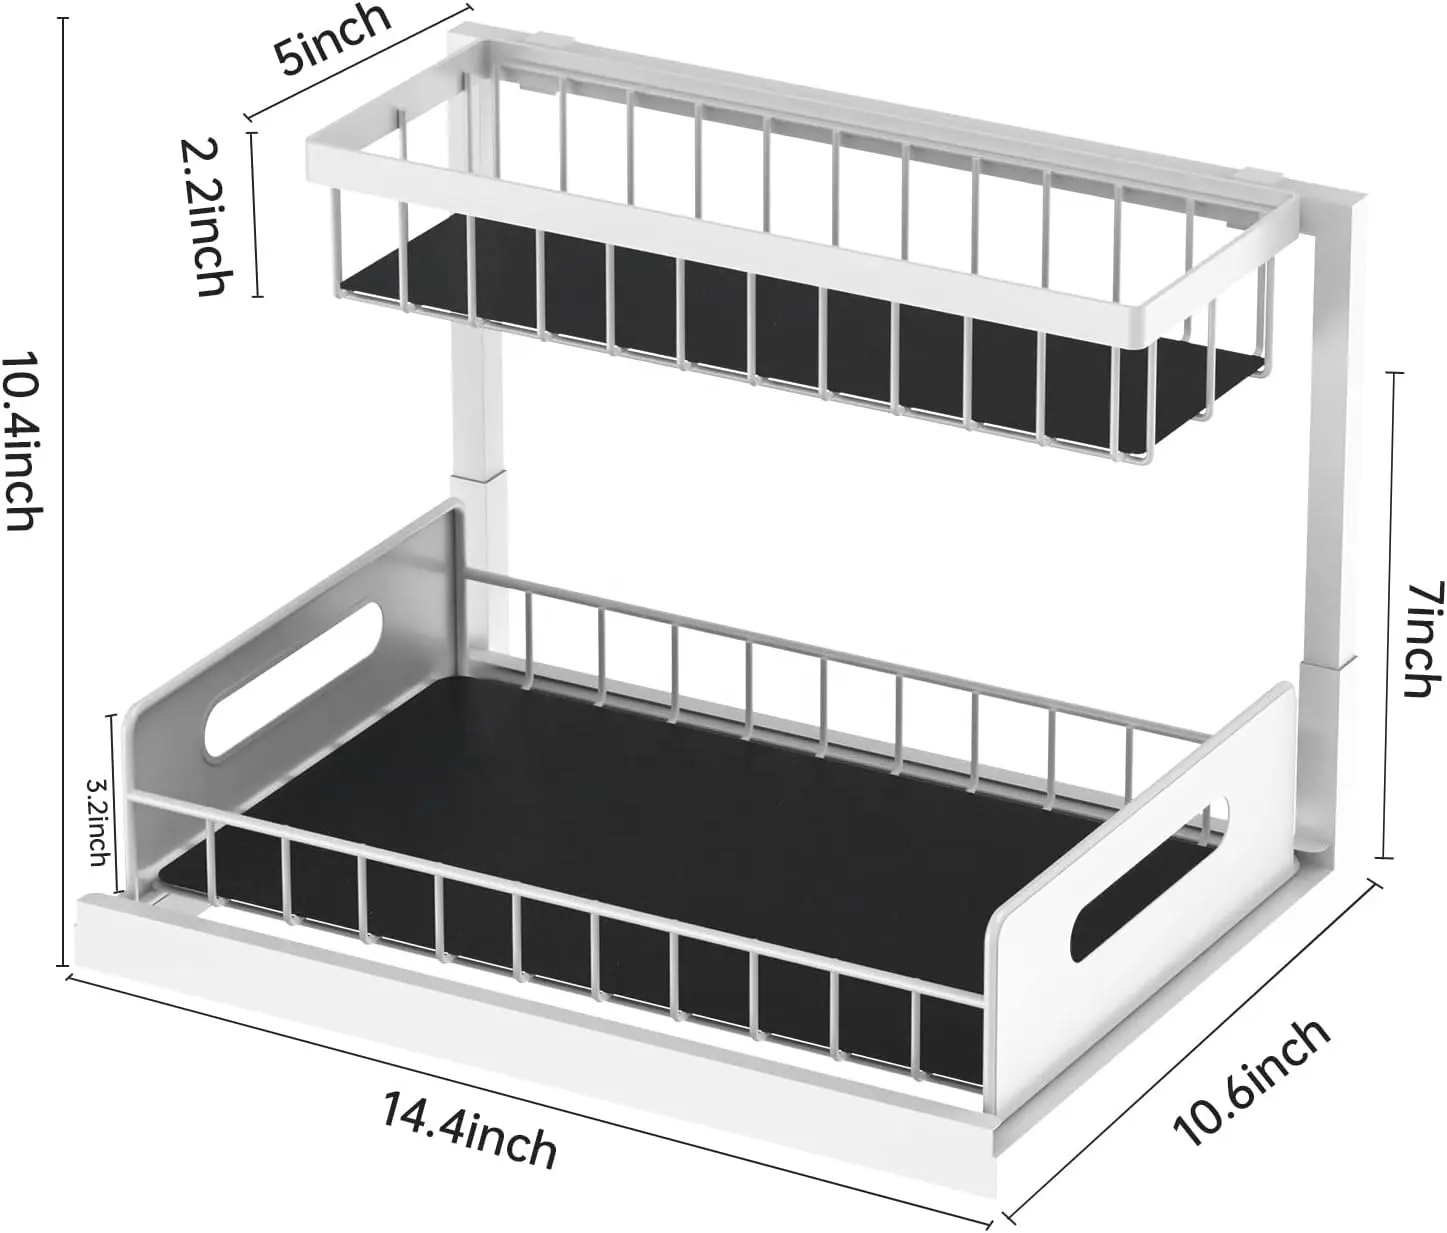 2-Tier Under Sink Pull Out Cabinet Storage Shelf with Sliding Storage Wire Basket Drawer for Bathroom Kitchen